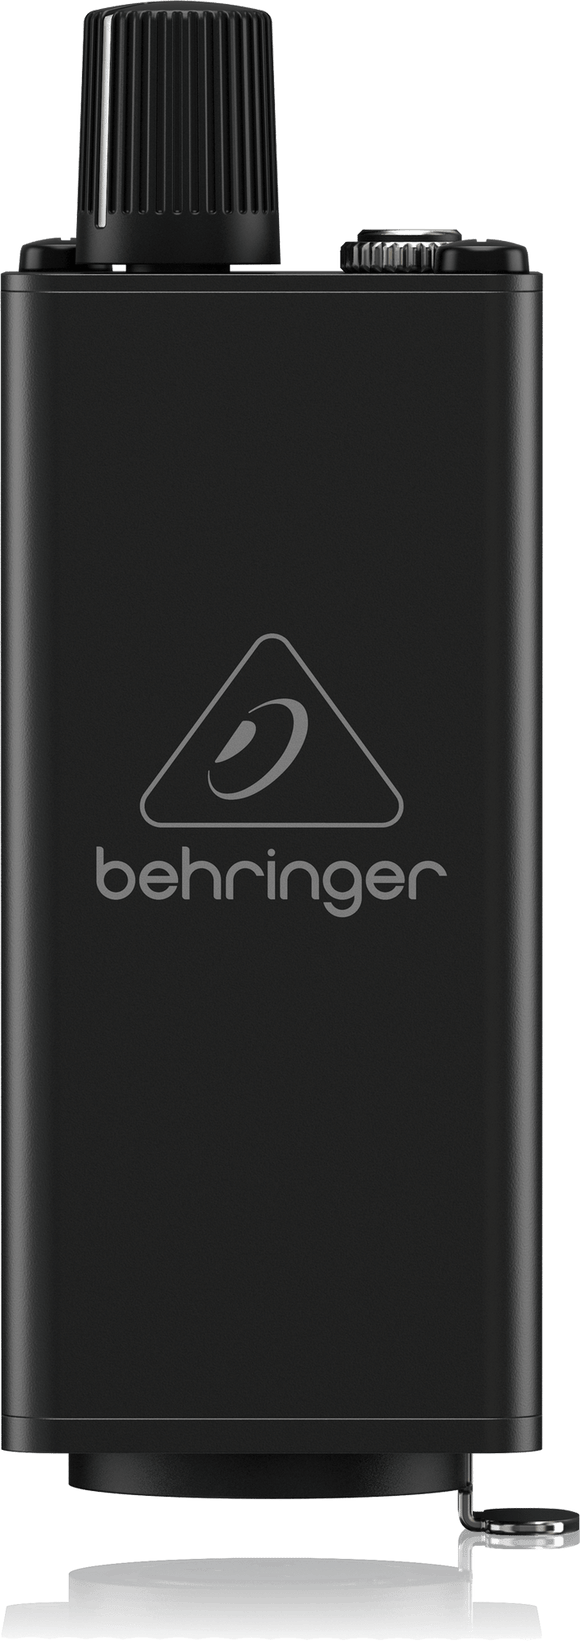 Behringer PM 1 B Stock